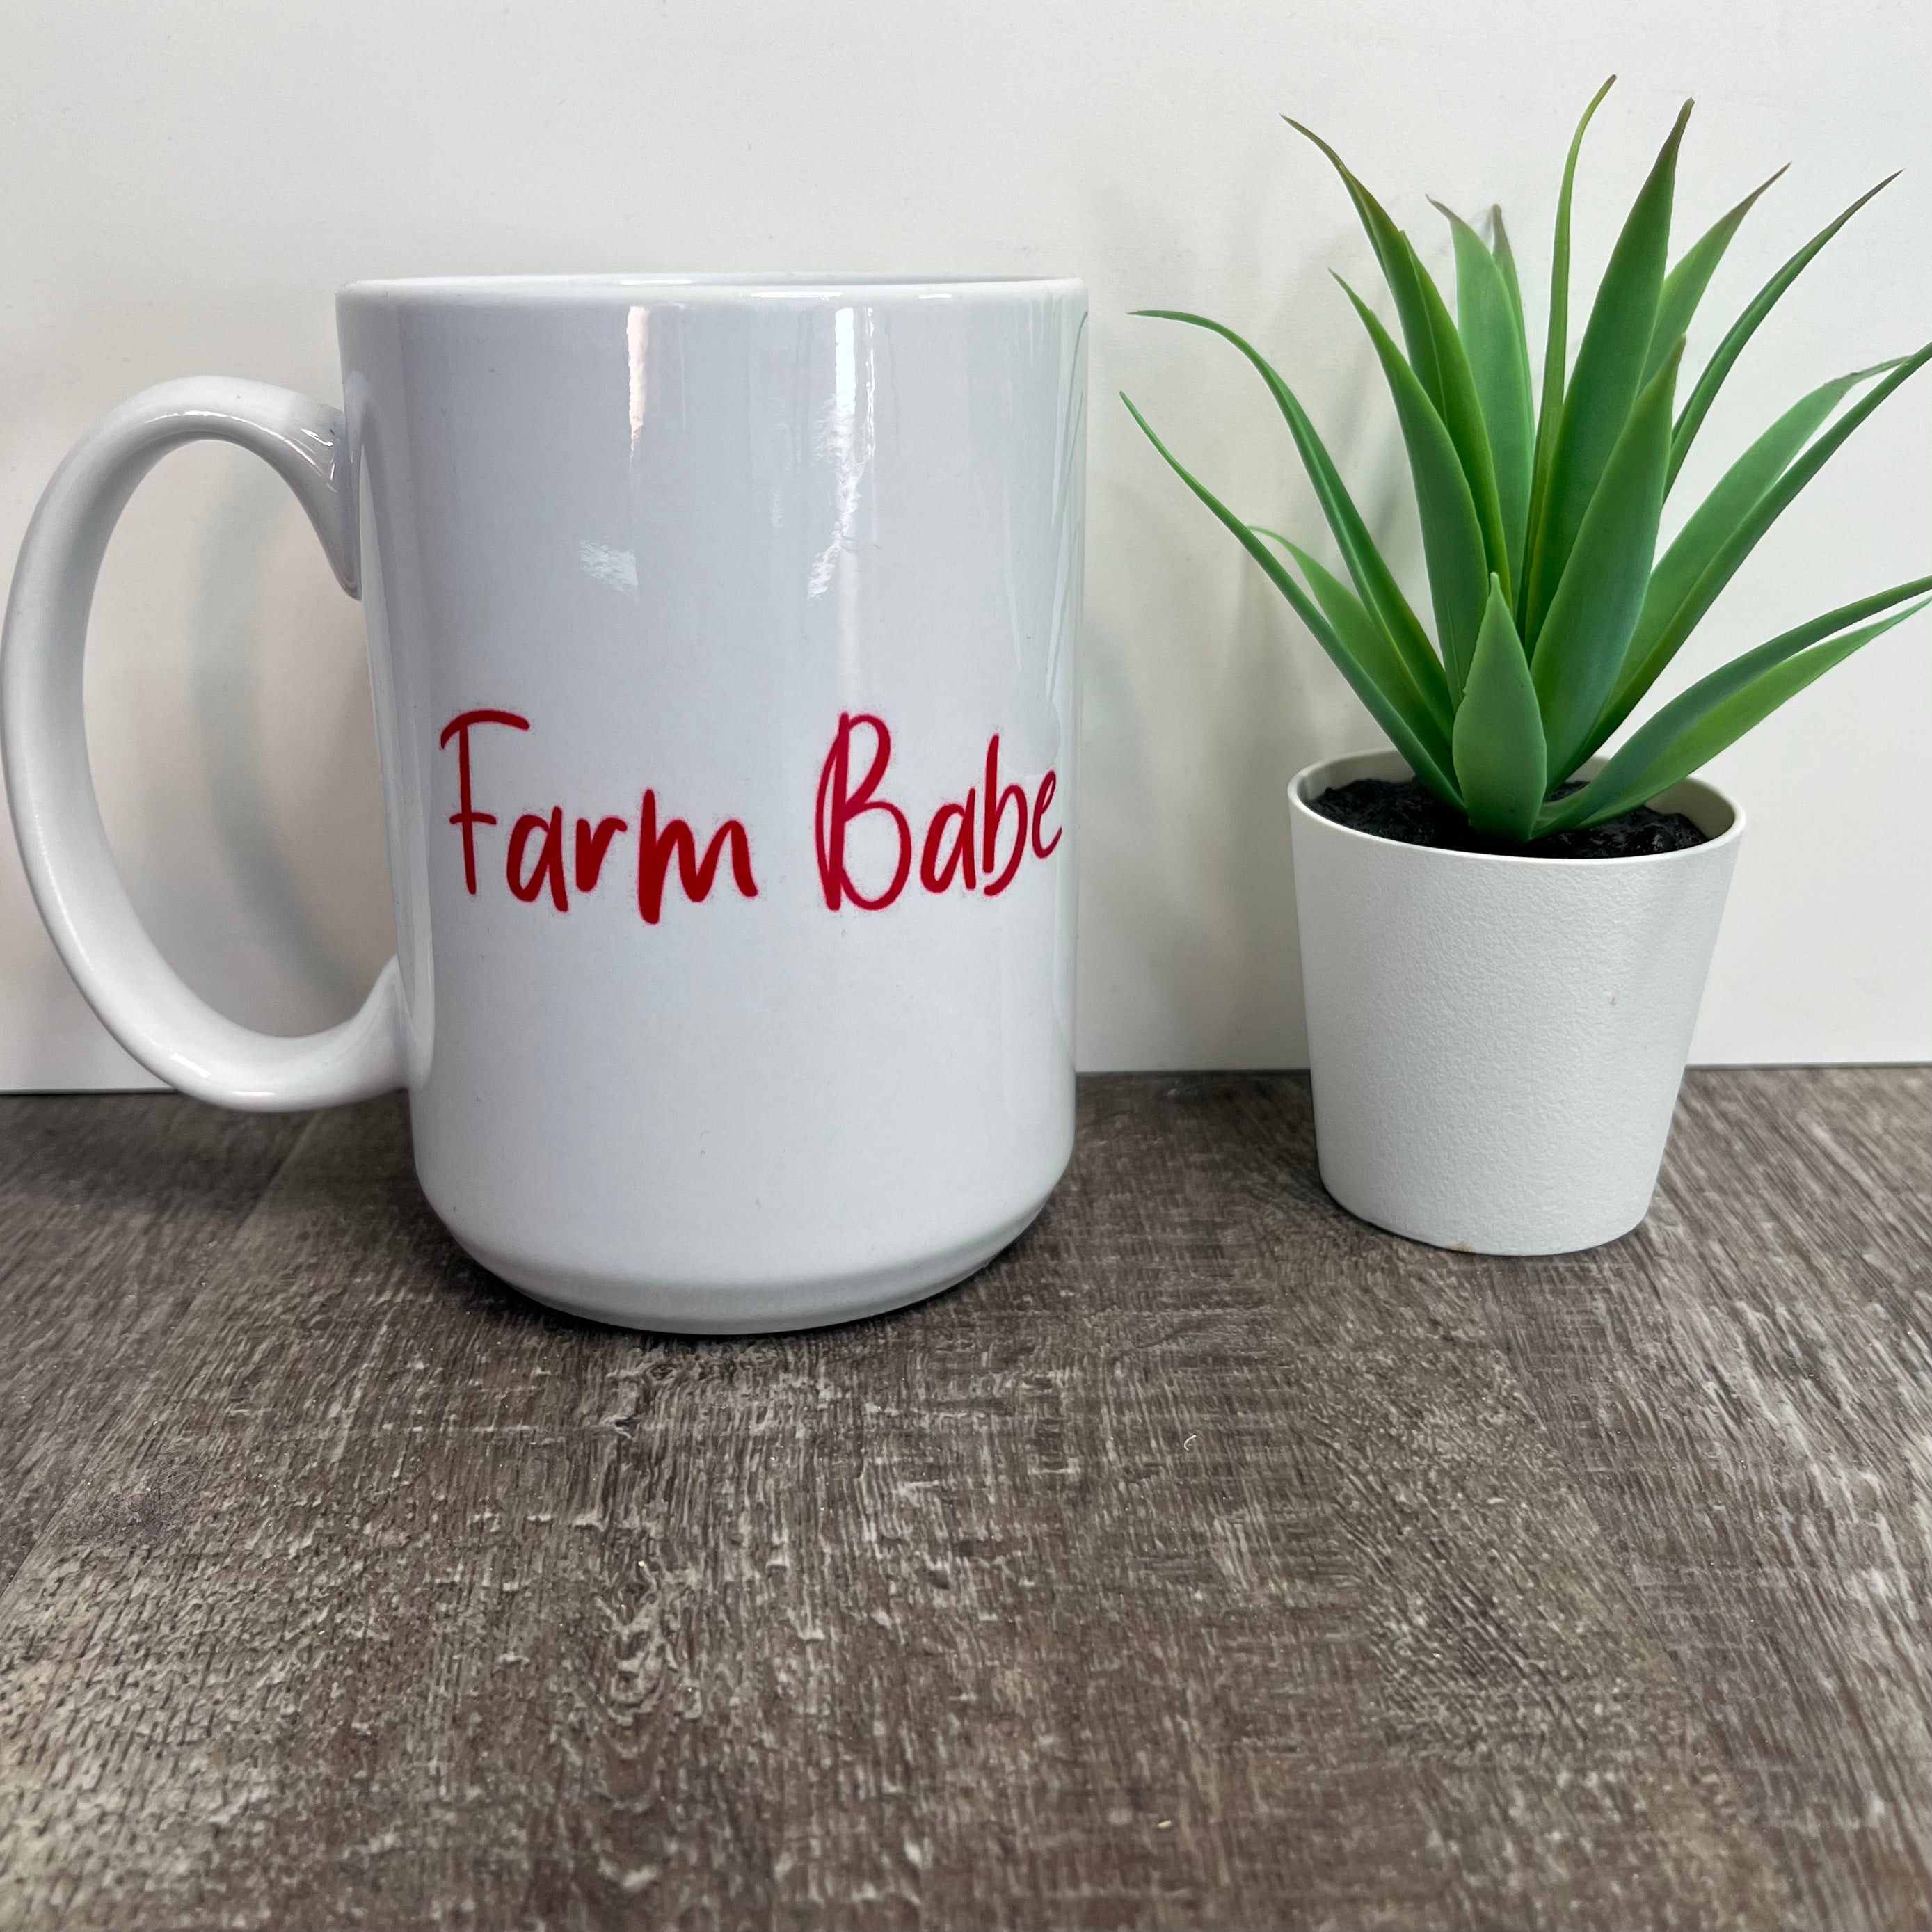 Farm Babe Mug